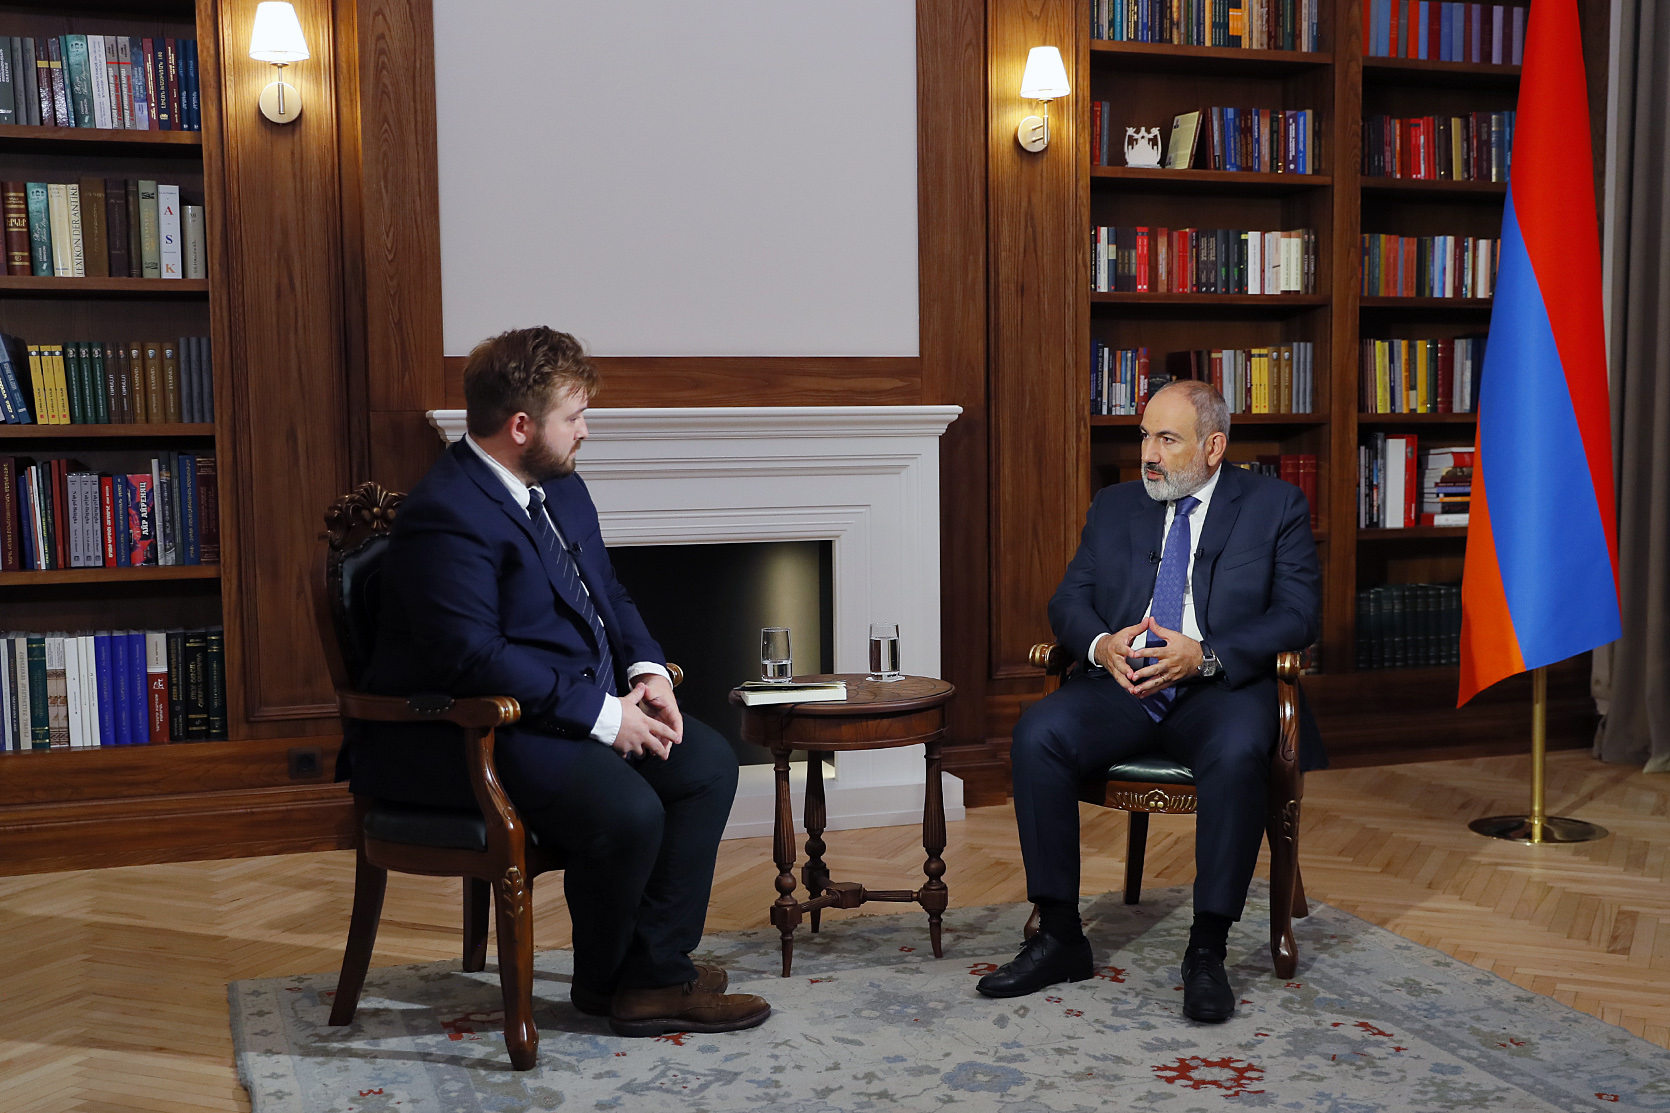 Интервью премьер-министра Никола Пашиняна изданию POLITICO Europe